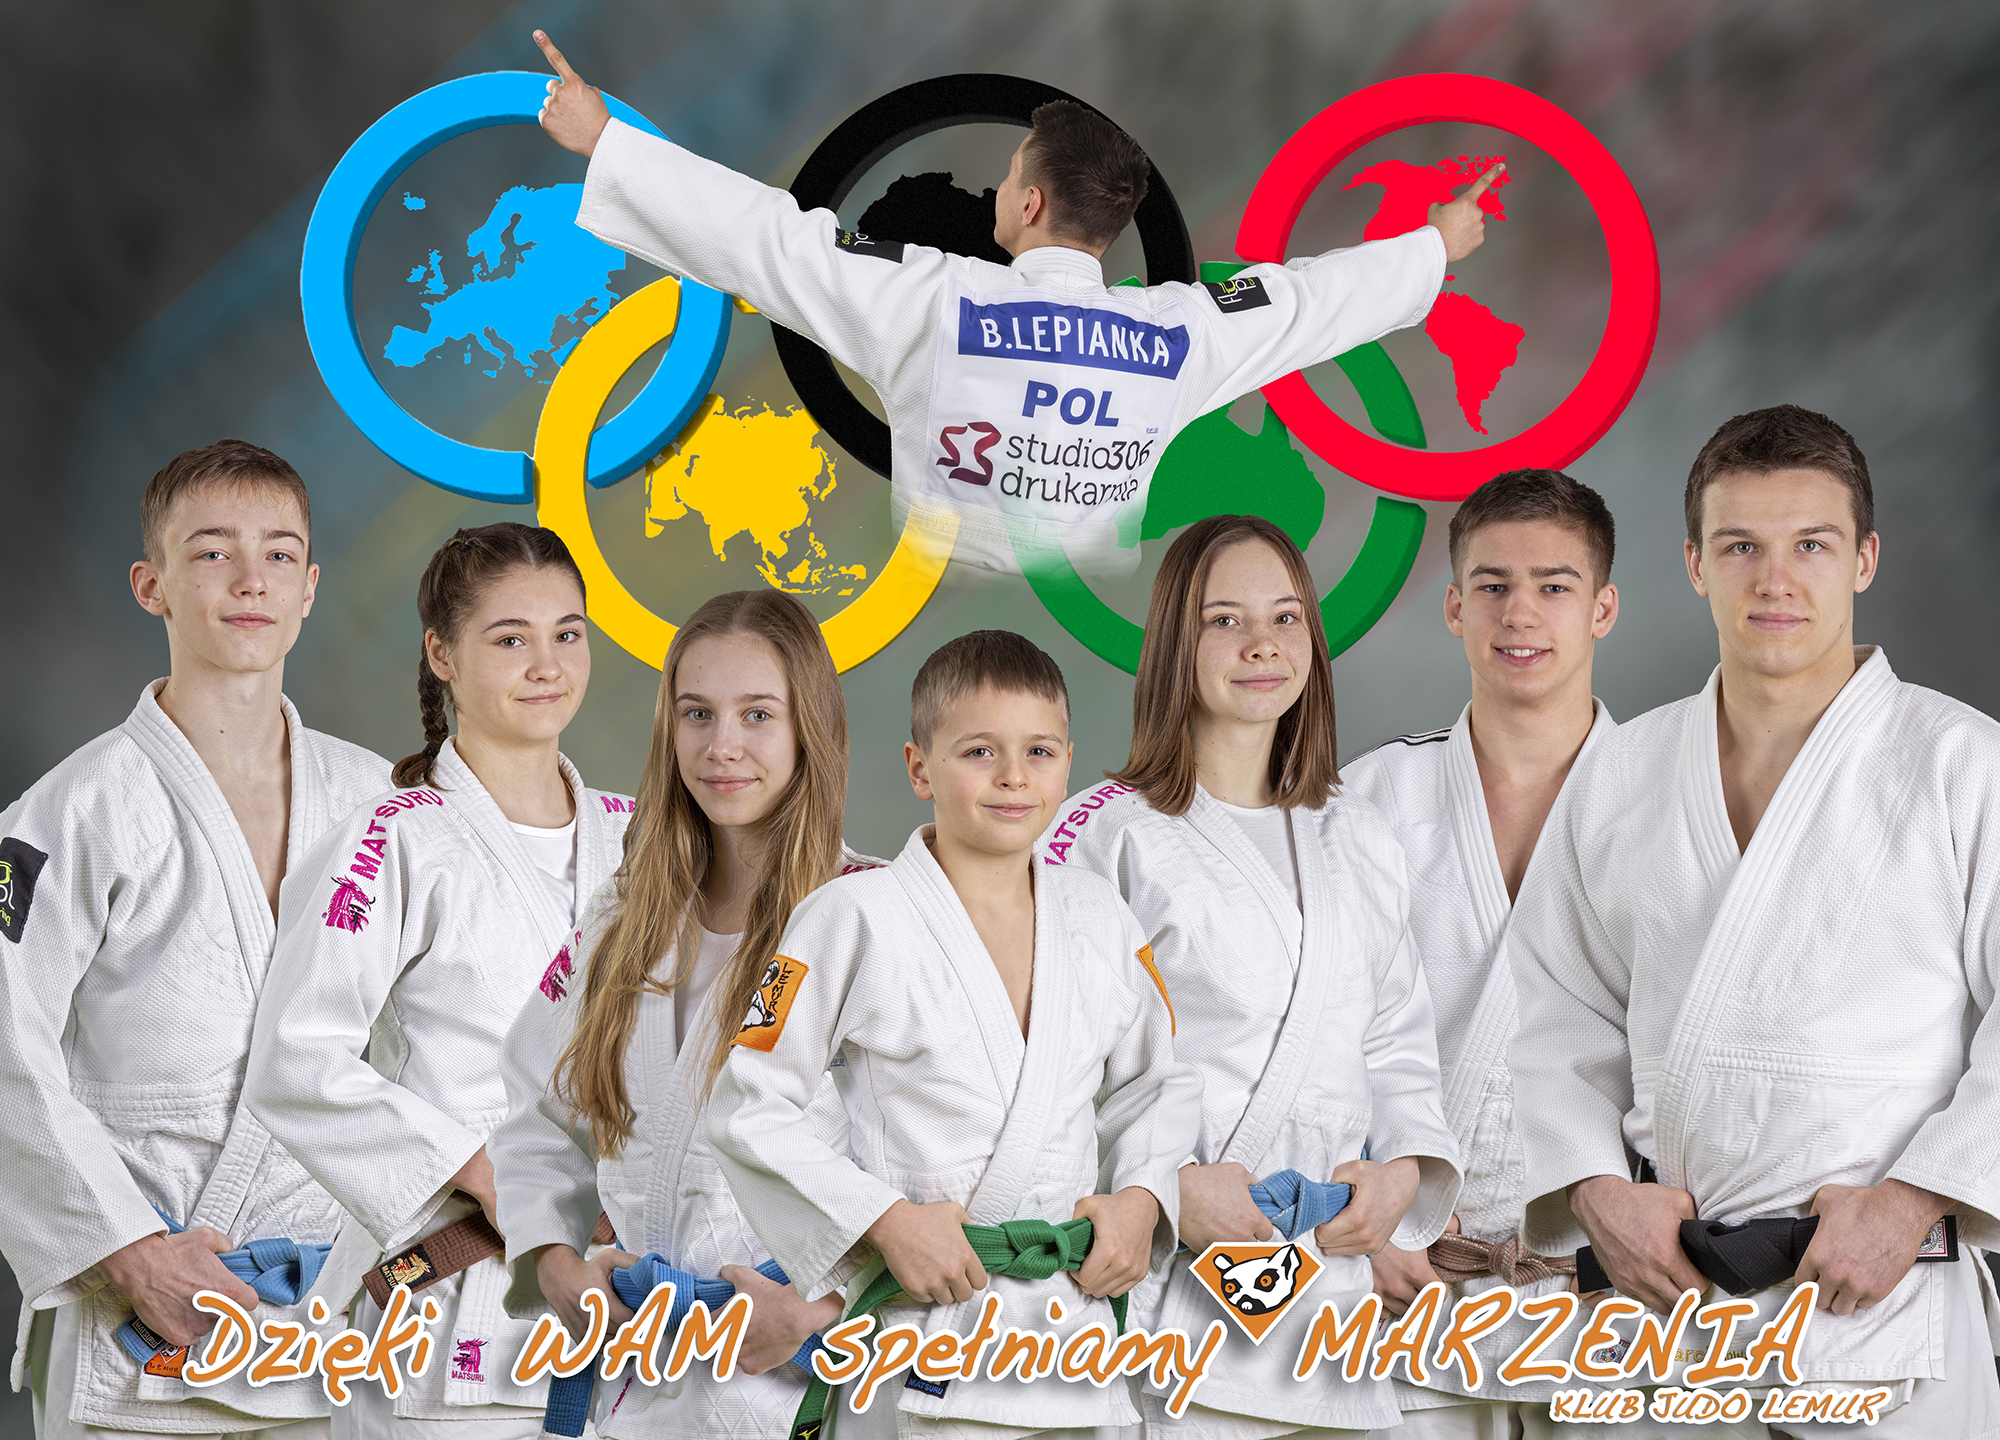 Jako pasjonat judo i trener w klubie Judo Lemur w Warszawie, zapraszam wszystkich, którzy chcą poczuć prawdziwego ducha walki i techniki judo na własnej skórze. Dołączcie do nas, poczujcie wyjątkową atmosferę i stańcie się częścią drużyny pełnej lemurów judo - niezależnie od poziomu umiejętności!